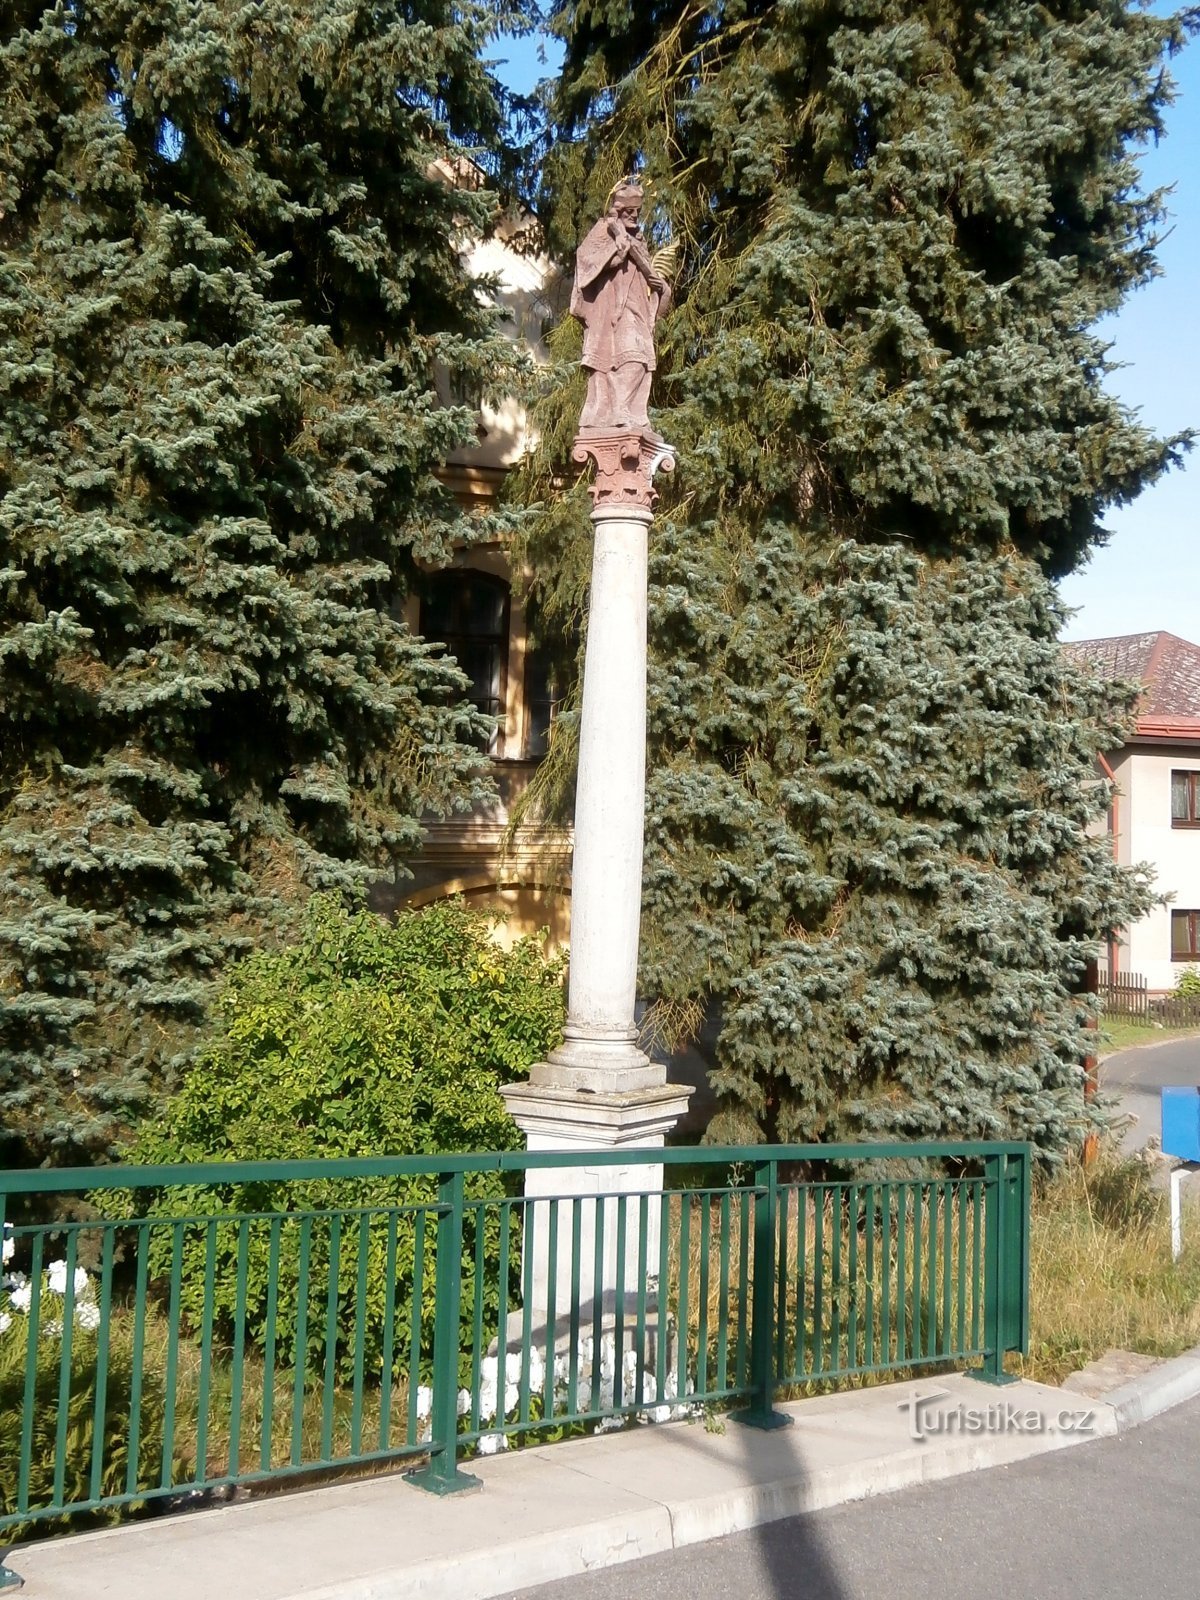 聖の像マンドル (Havlovice) 近くの橋の手すりの後ろにいるネポマックのジョン